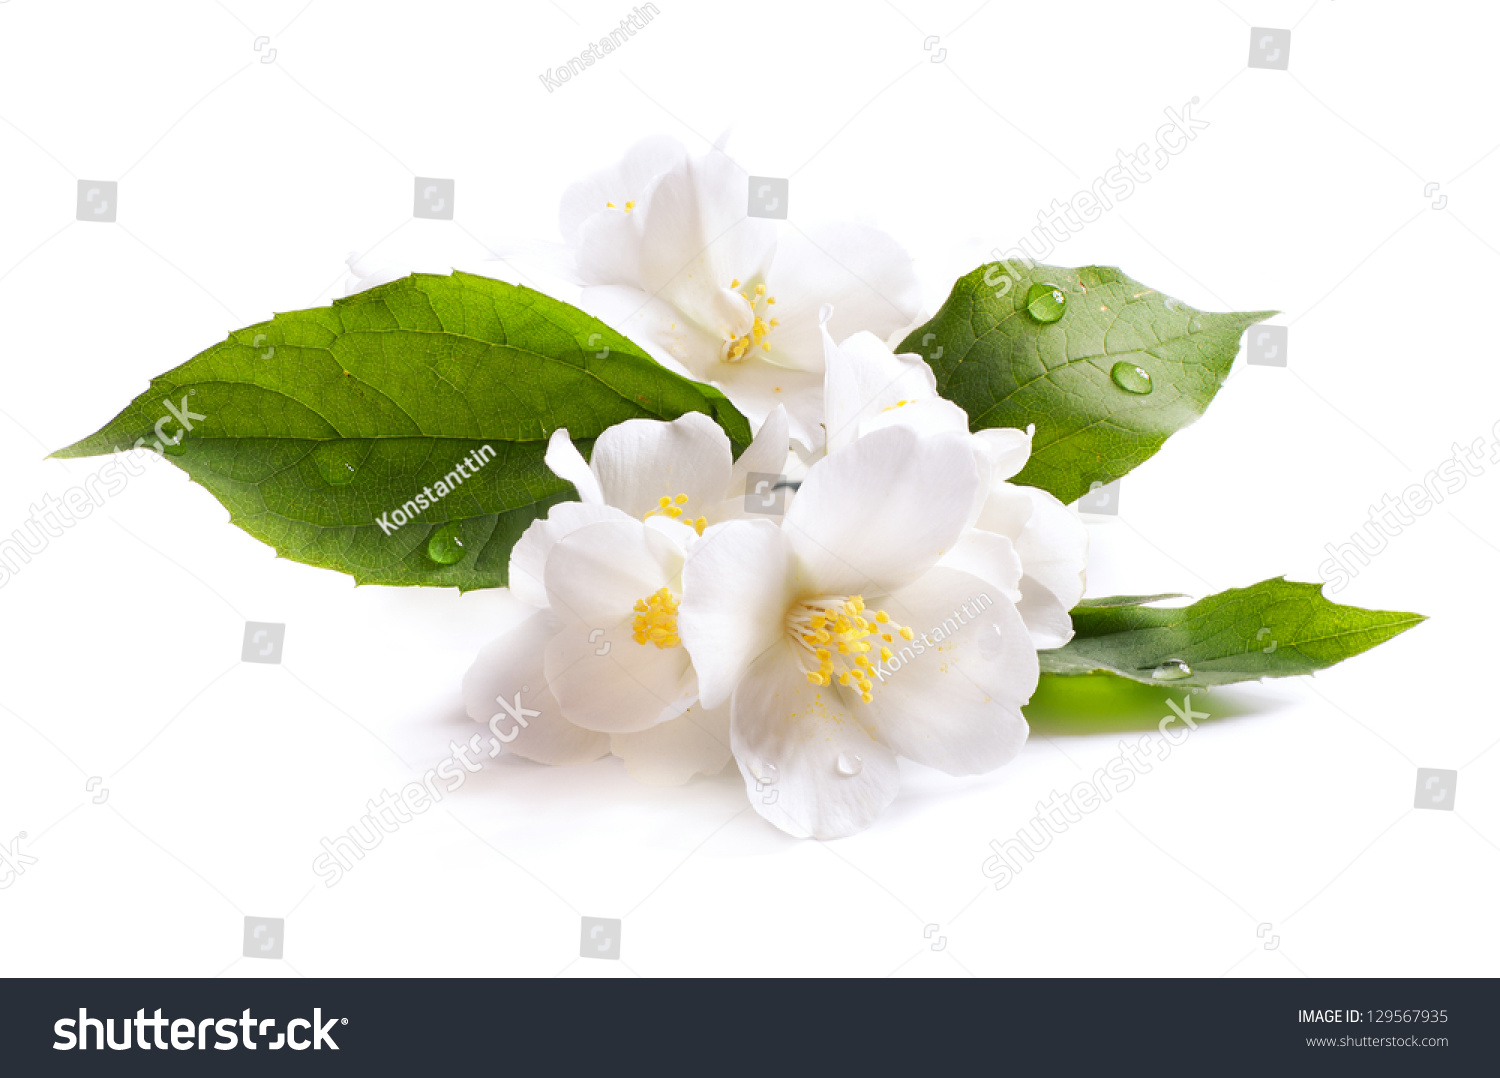  jasmine white flower isolated on white background #129567935